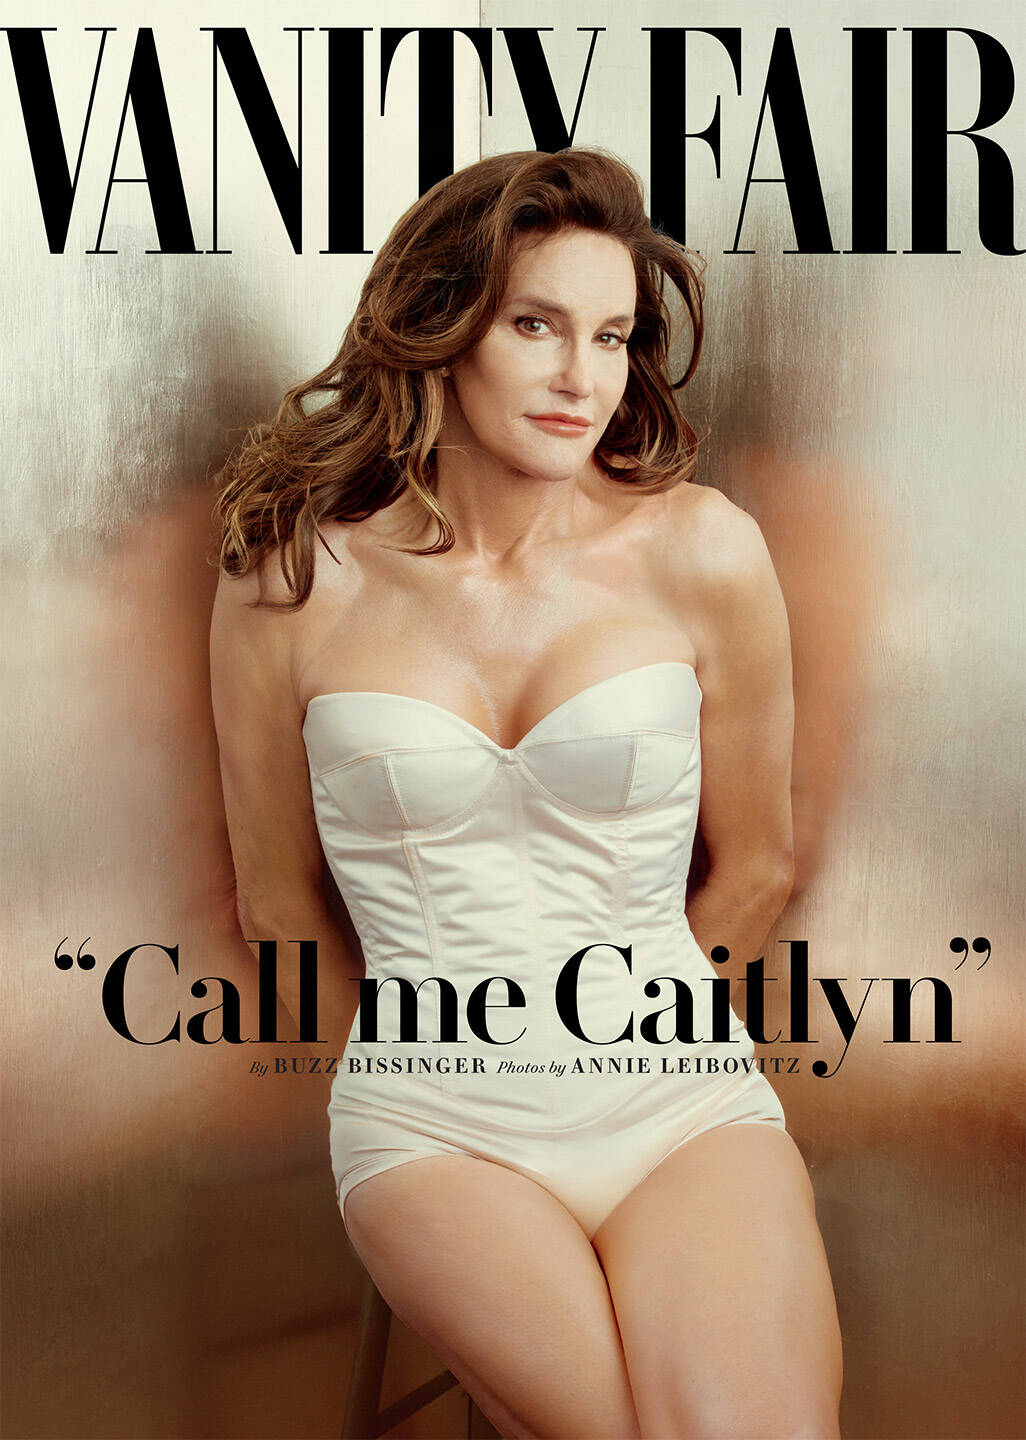 Uma das edições mais importantes da Vanity Fair trouxe a trans Caitlyn Jenner na capa. Foto: Divulgação